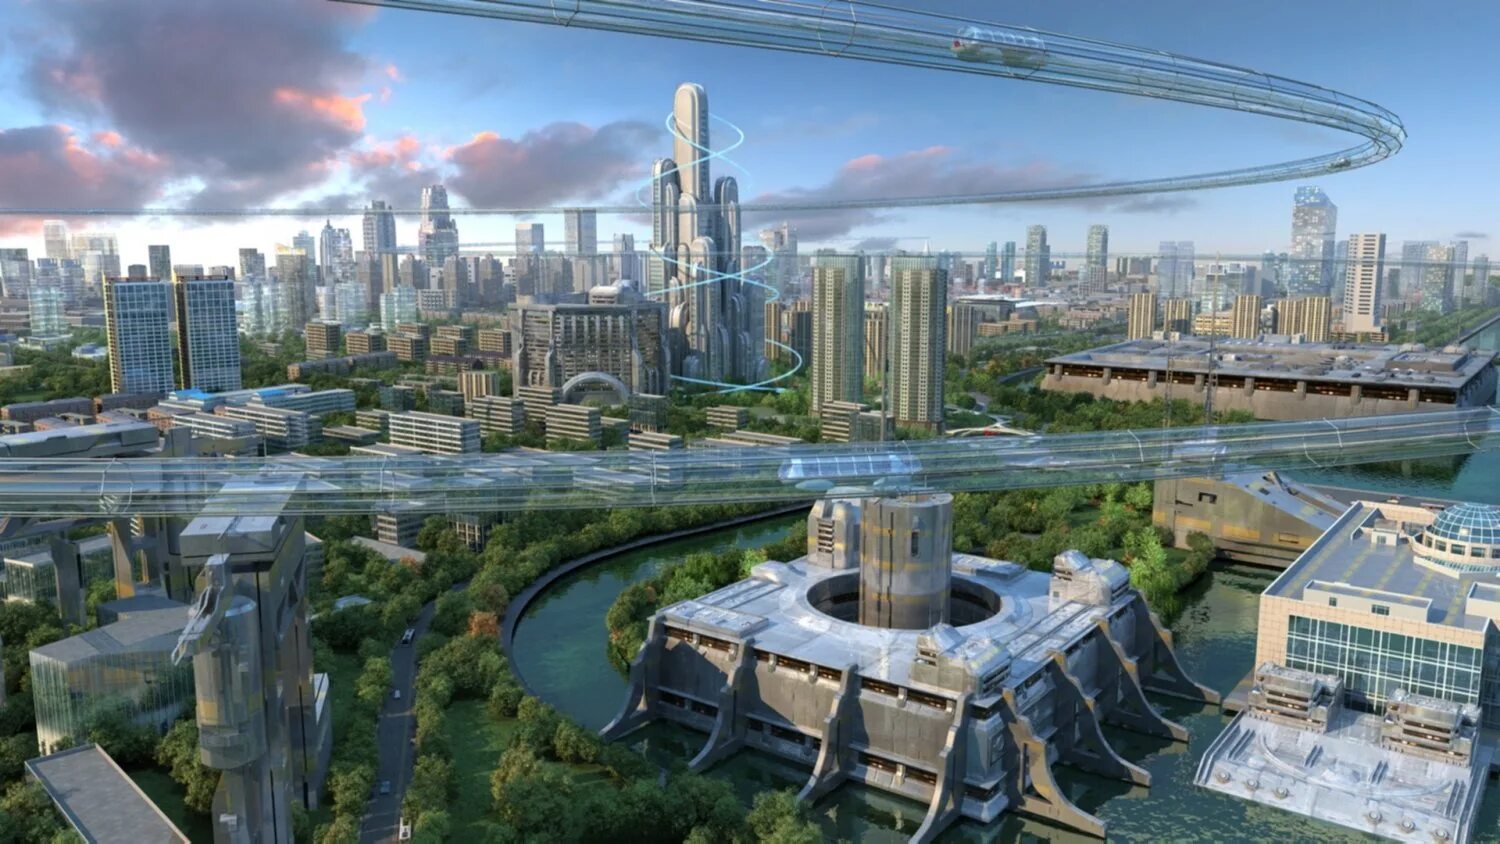 Будущее место. Город будущего. Будущий город. Будущее город. Москва в далеком будущем.